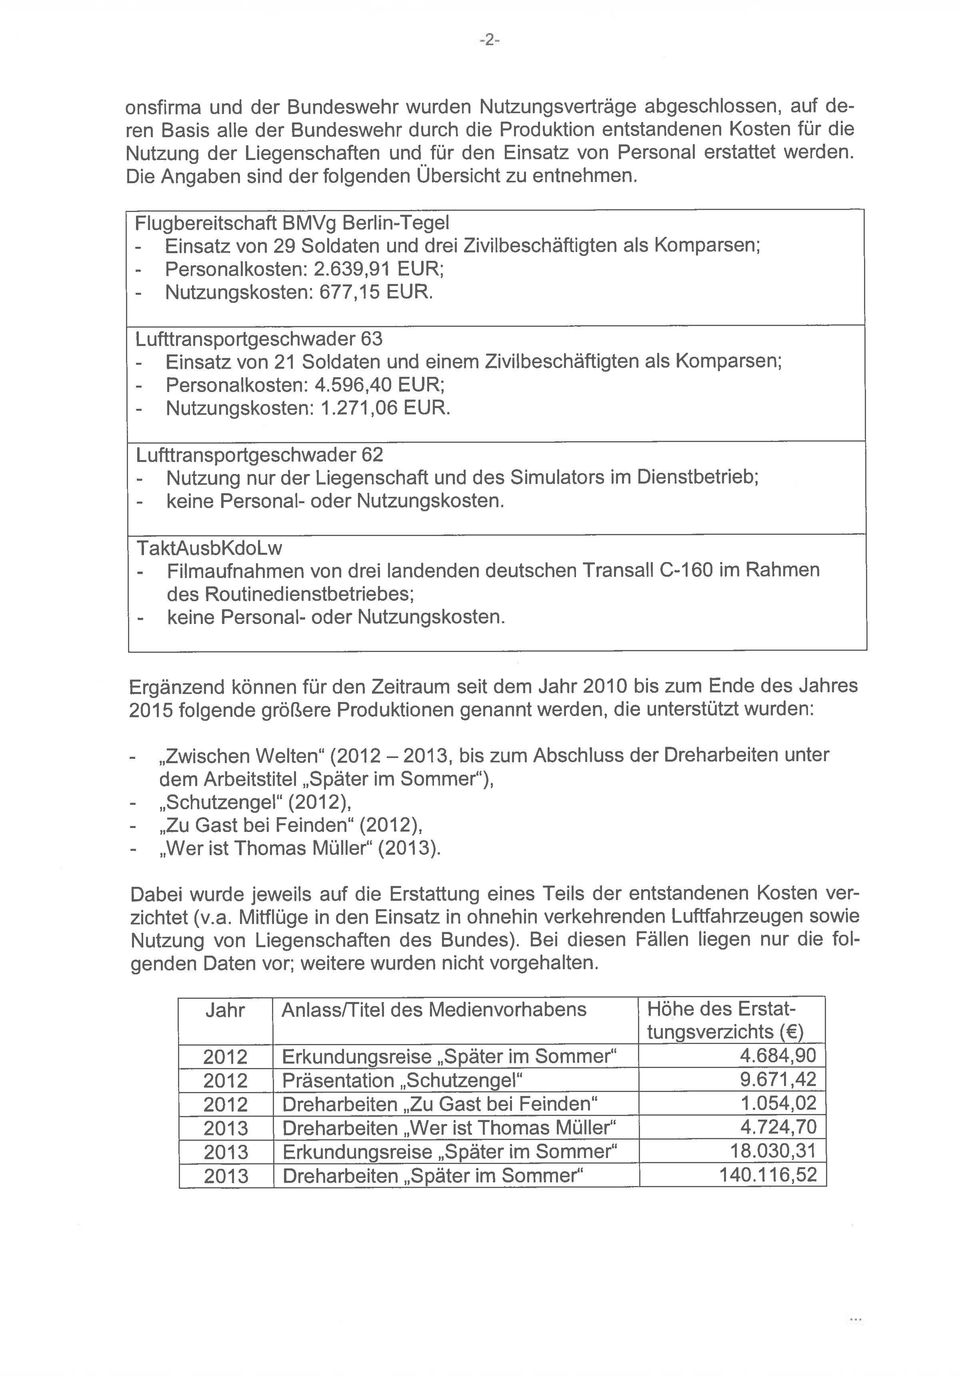 Flugbereitschaft BMVg Berlin-Tegel - Einsatz von 29 Soldaten und drei Zivilbeschäftigten als Komparsen; - Personalkosten: 2.639,91 EUR; - Nutzungskosten: 677,15 EUR.